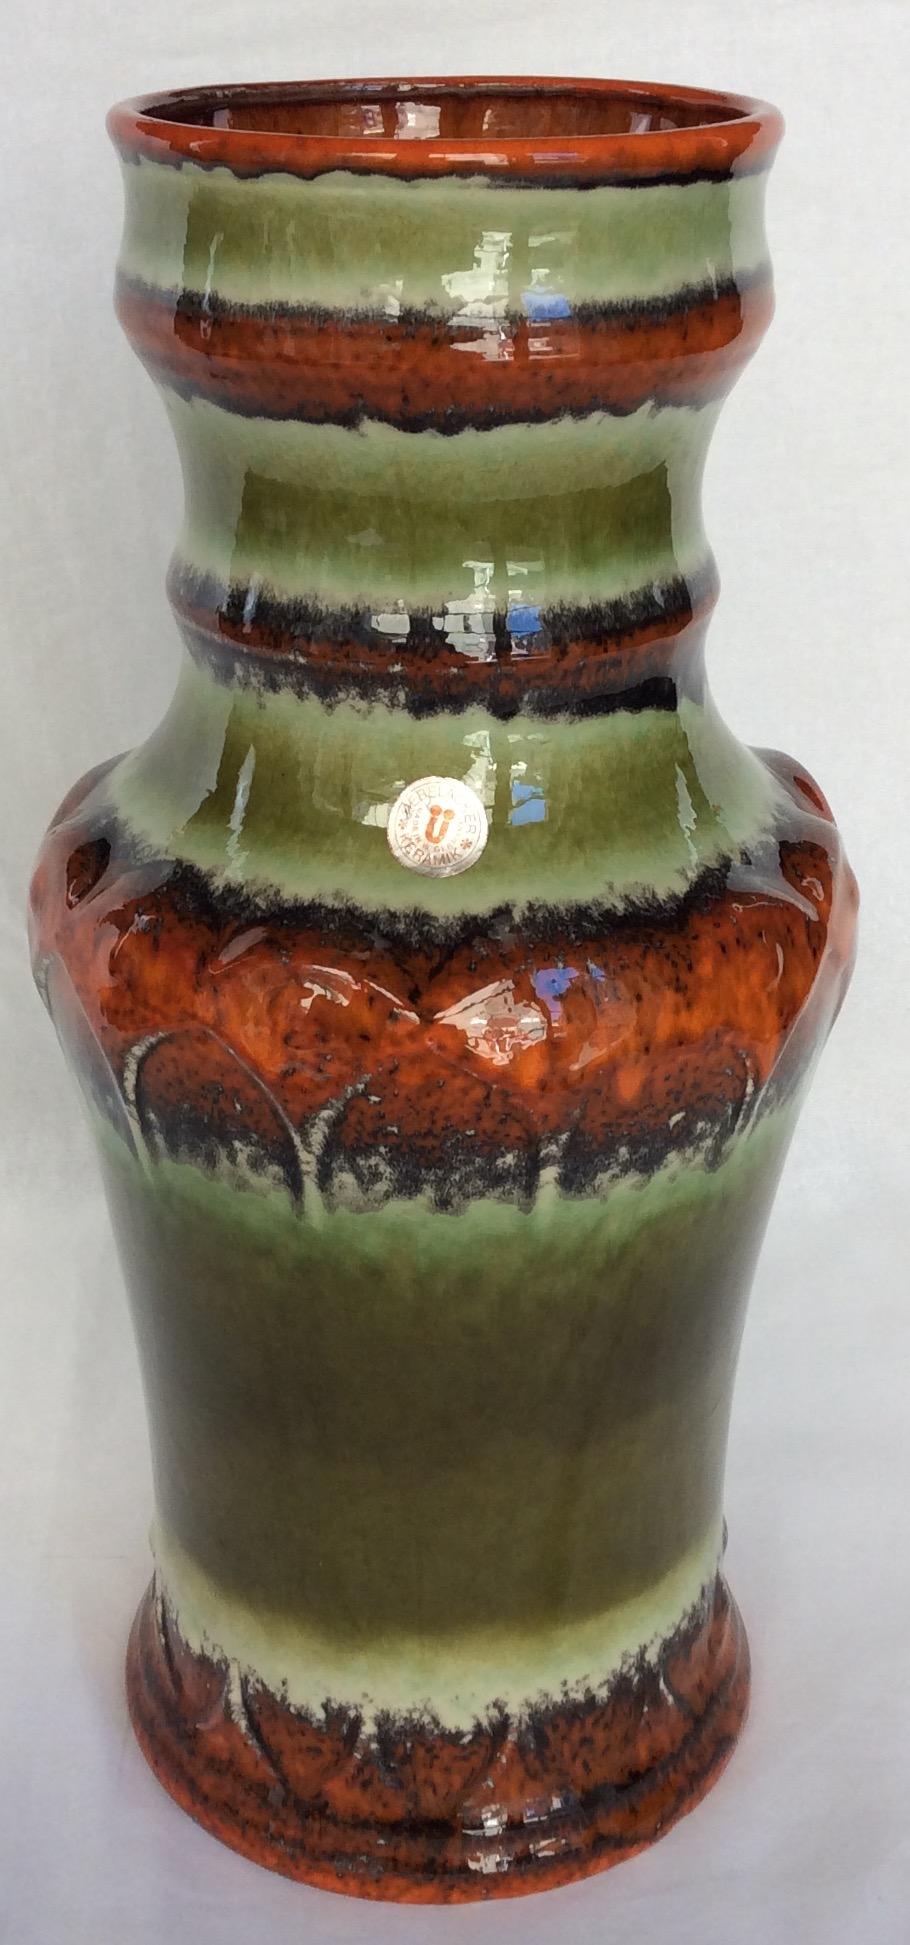 Ce grand vase de collection du milieu du siècle a été produit vers 1965 par le célèbre fabricant de poteries ouest-allemand Uebelacker Keramik. Le vase présente de superbes teintes vertes, orange, beiges et brunes et est parfaitement émaillé. Cette